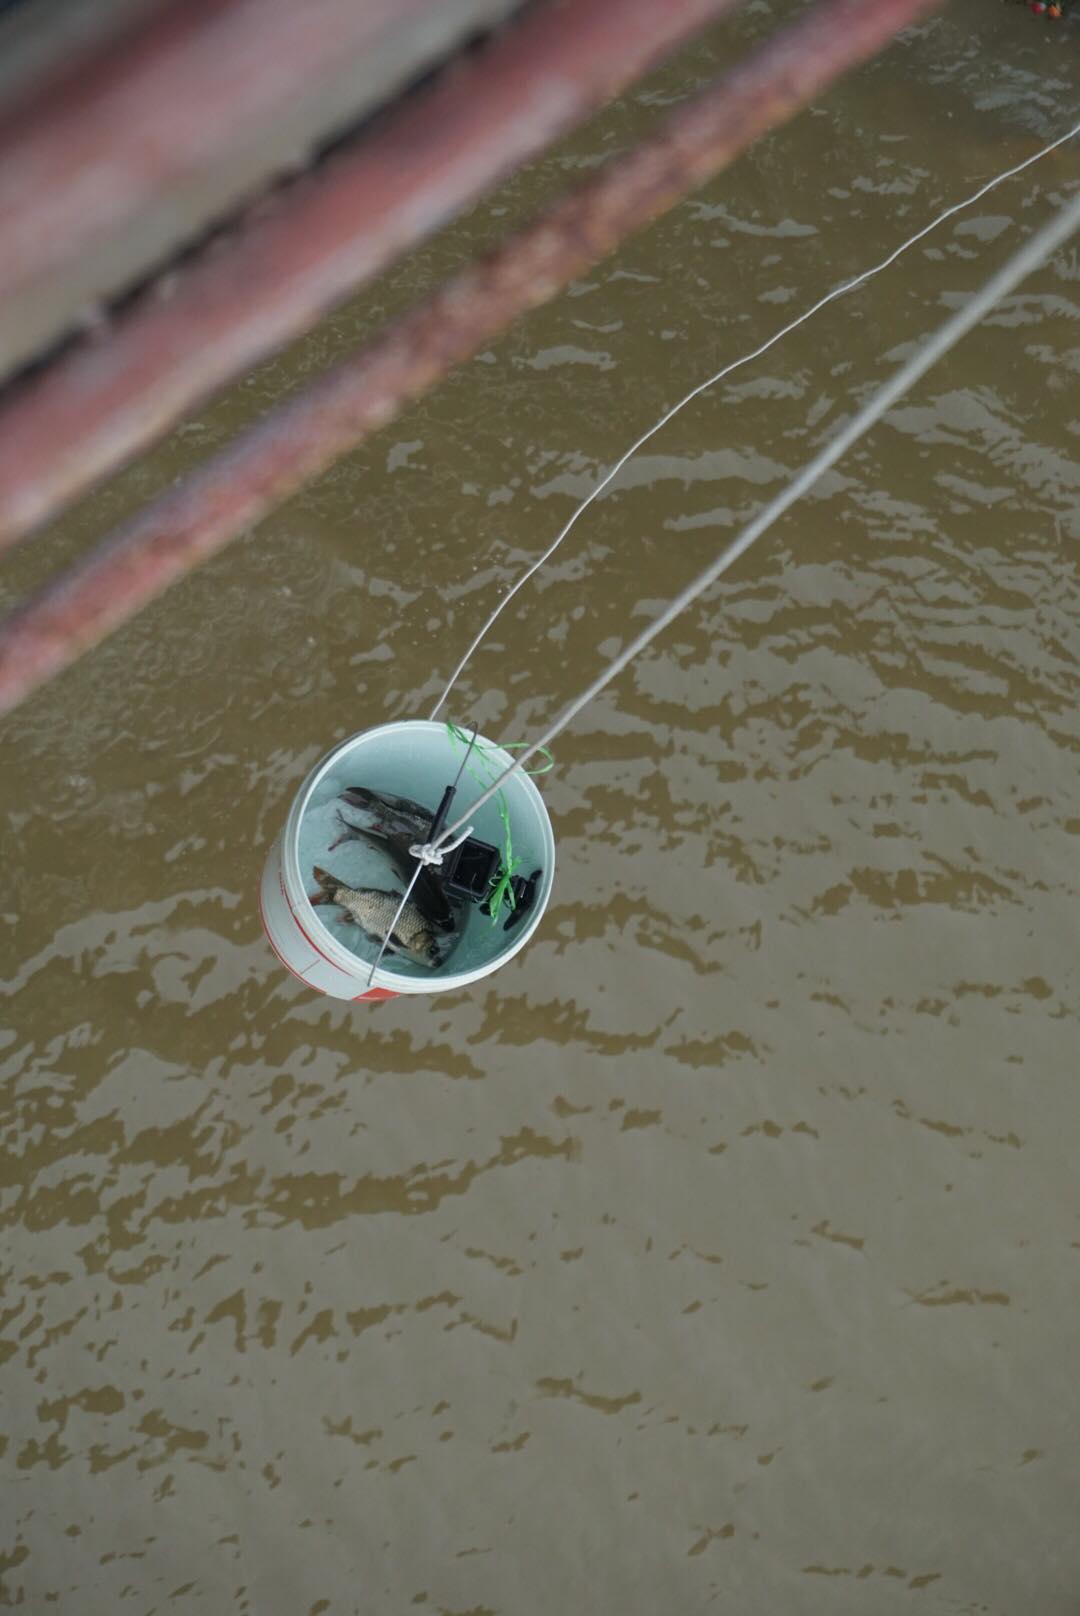  Những xô cá được đưa từ trên cầu xuống dưới nước